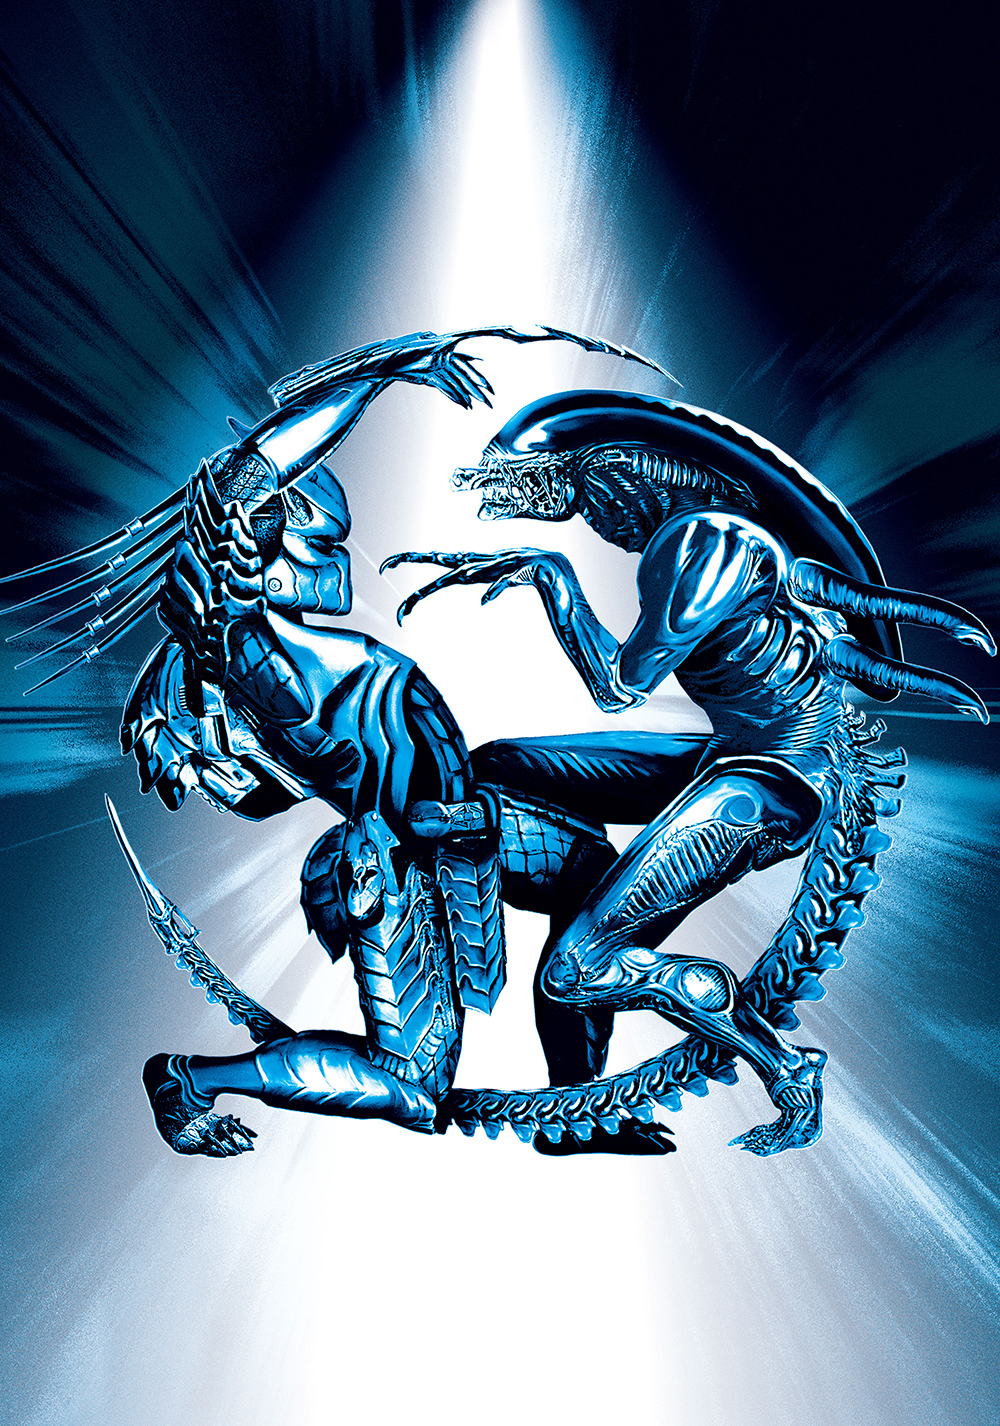 AVP: Alien vs. Predator Art